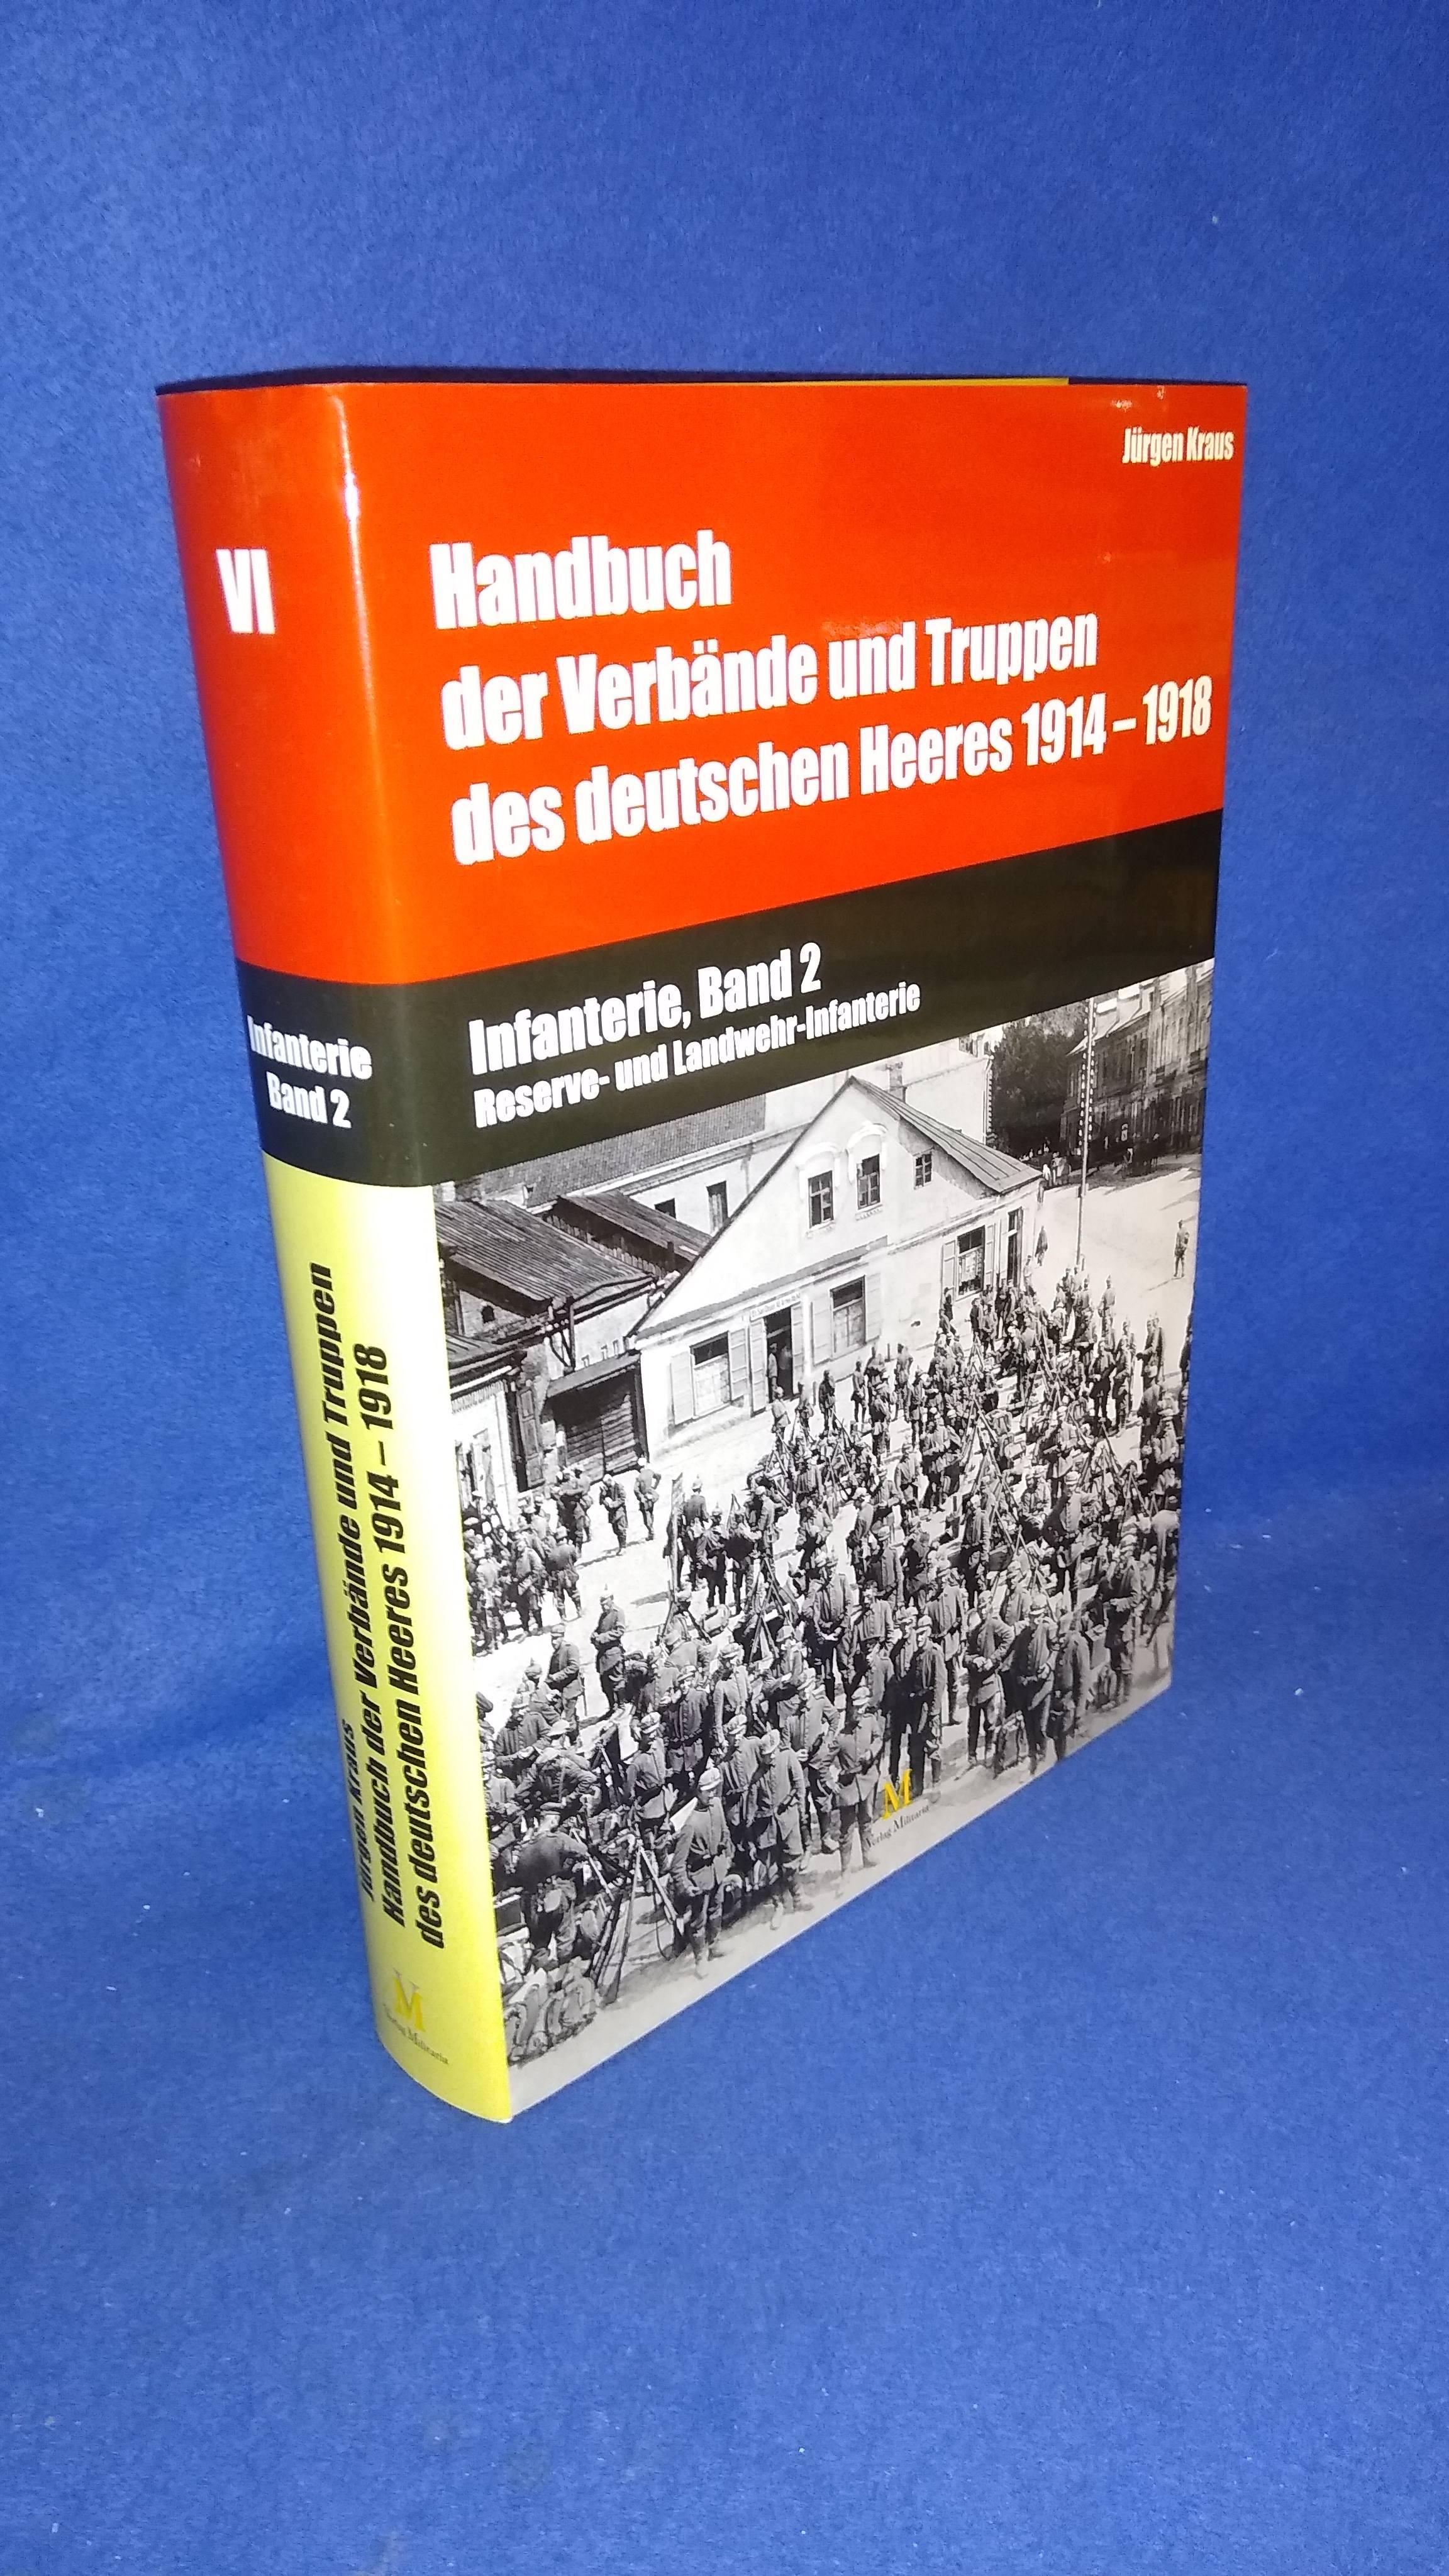 Handbuch der Verbände und Truppen des deutschen Heeres 1914 - 1918. Infanterie, Band 2: Reserve-und Landwehr-Infanterie.